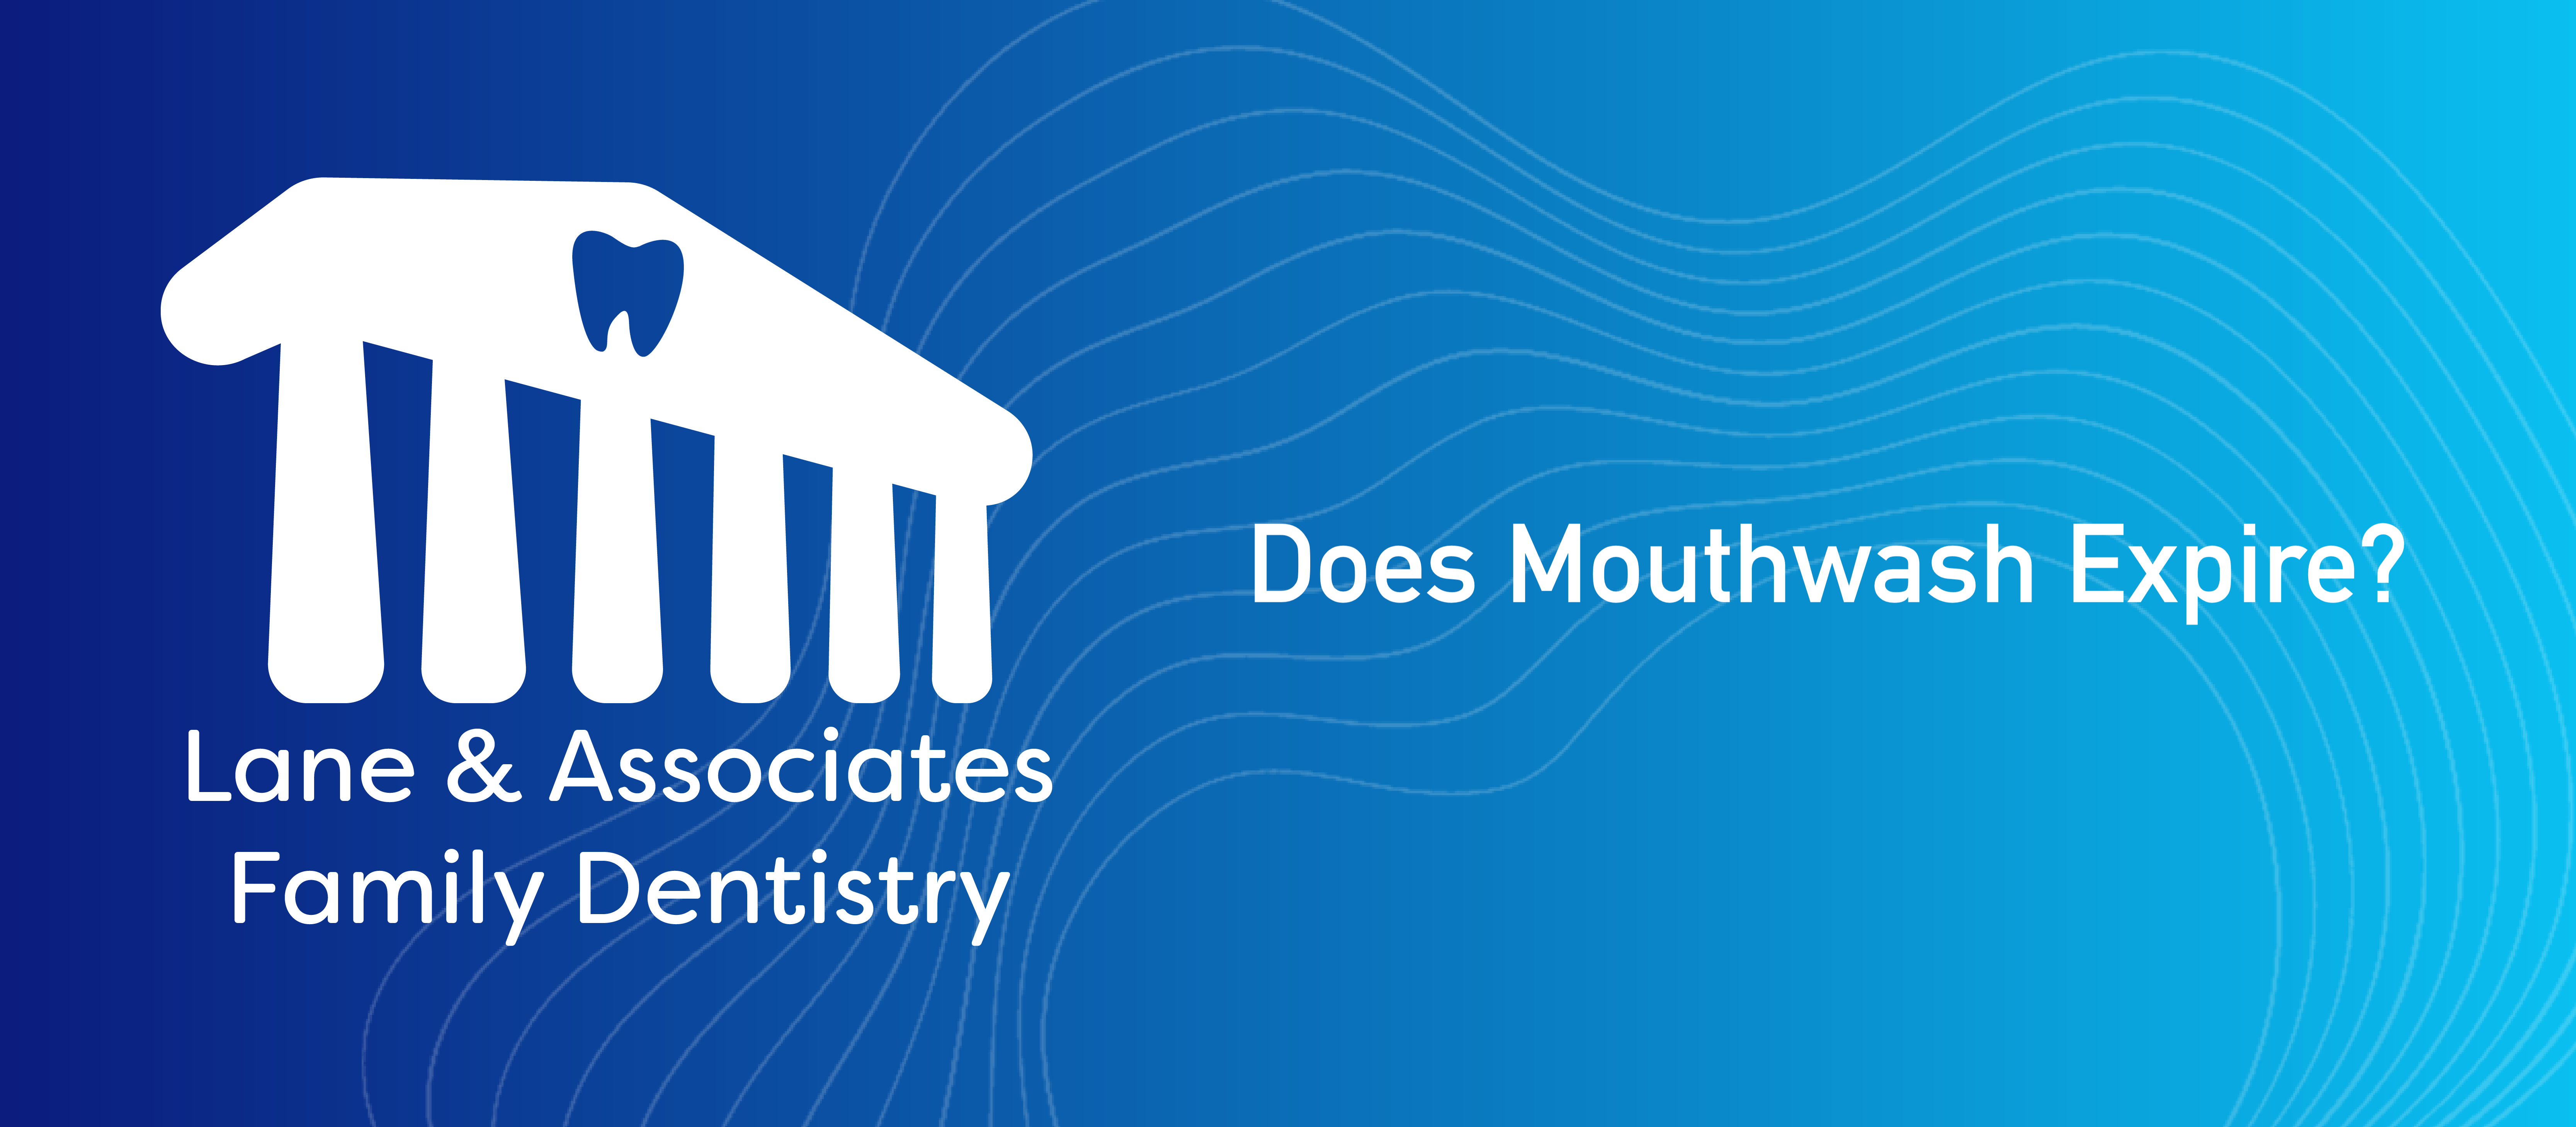 Does mouthwash expire?